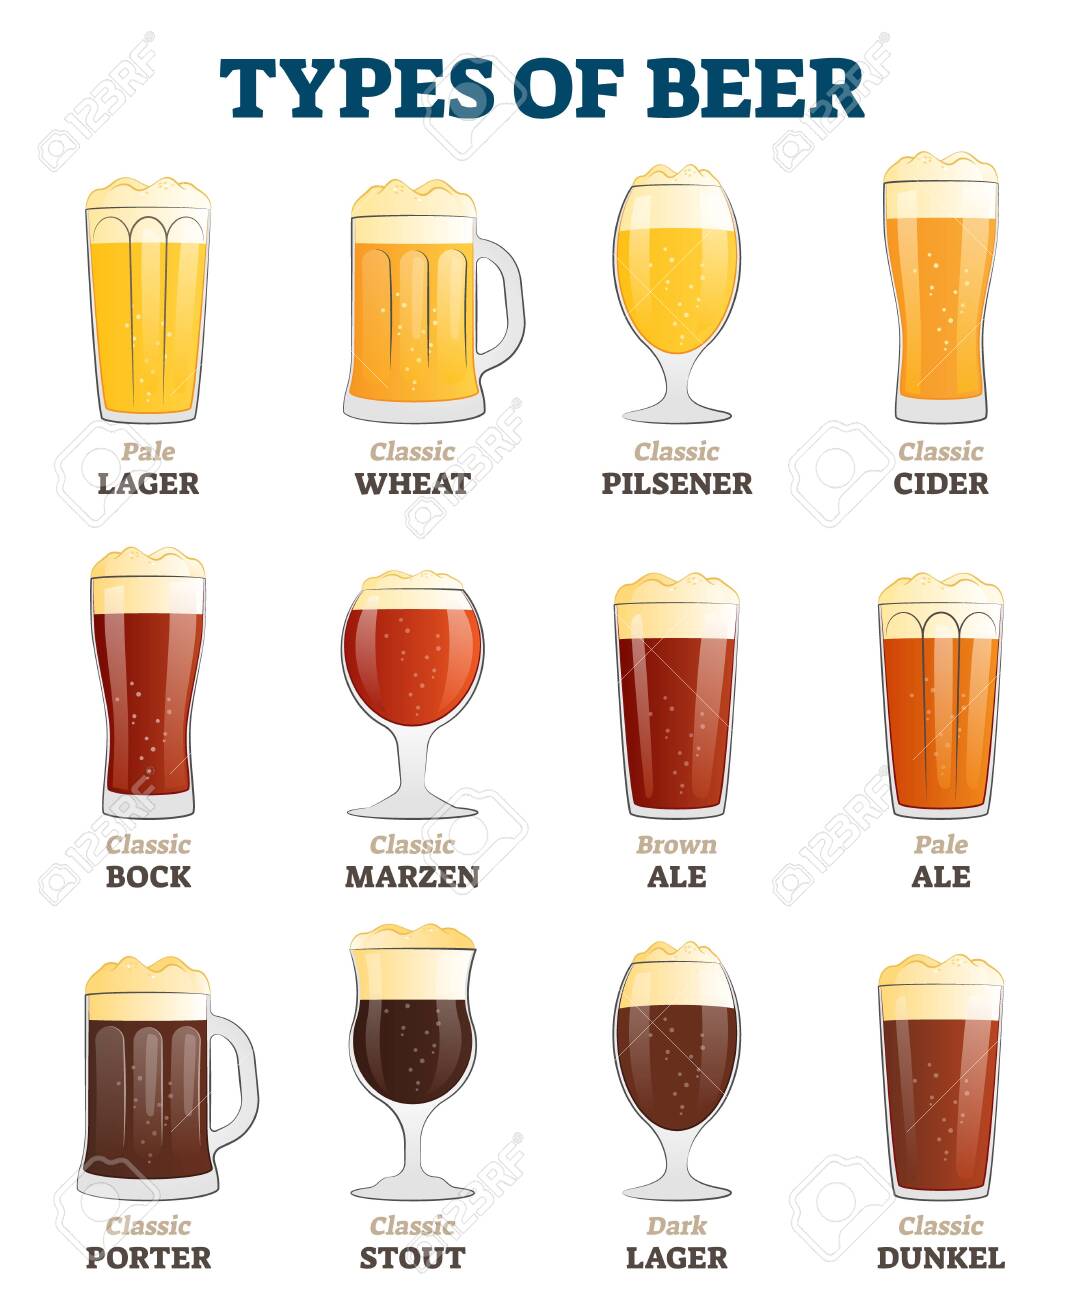 142518409-types-of-beer-vector-illustration-alcoholic-beverage-menu-collection-set-labeled-vis...jpg